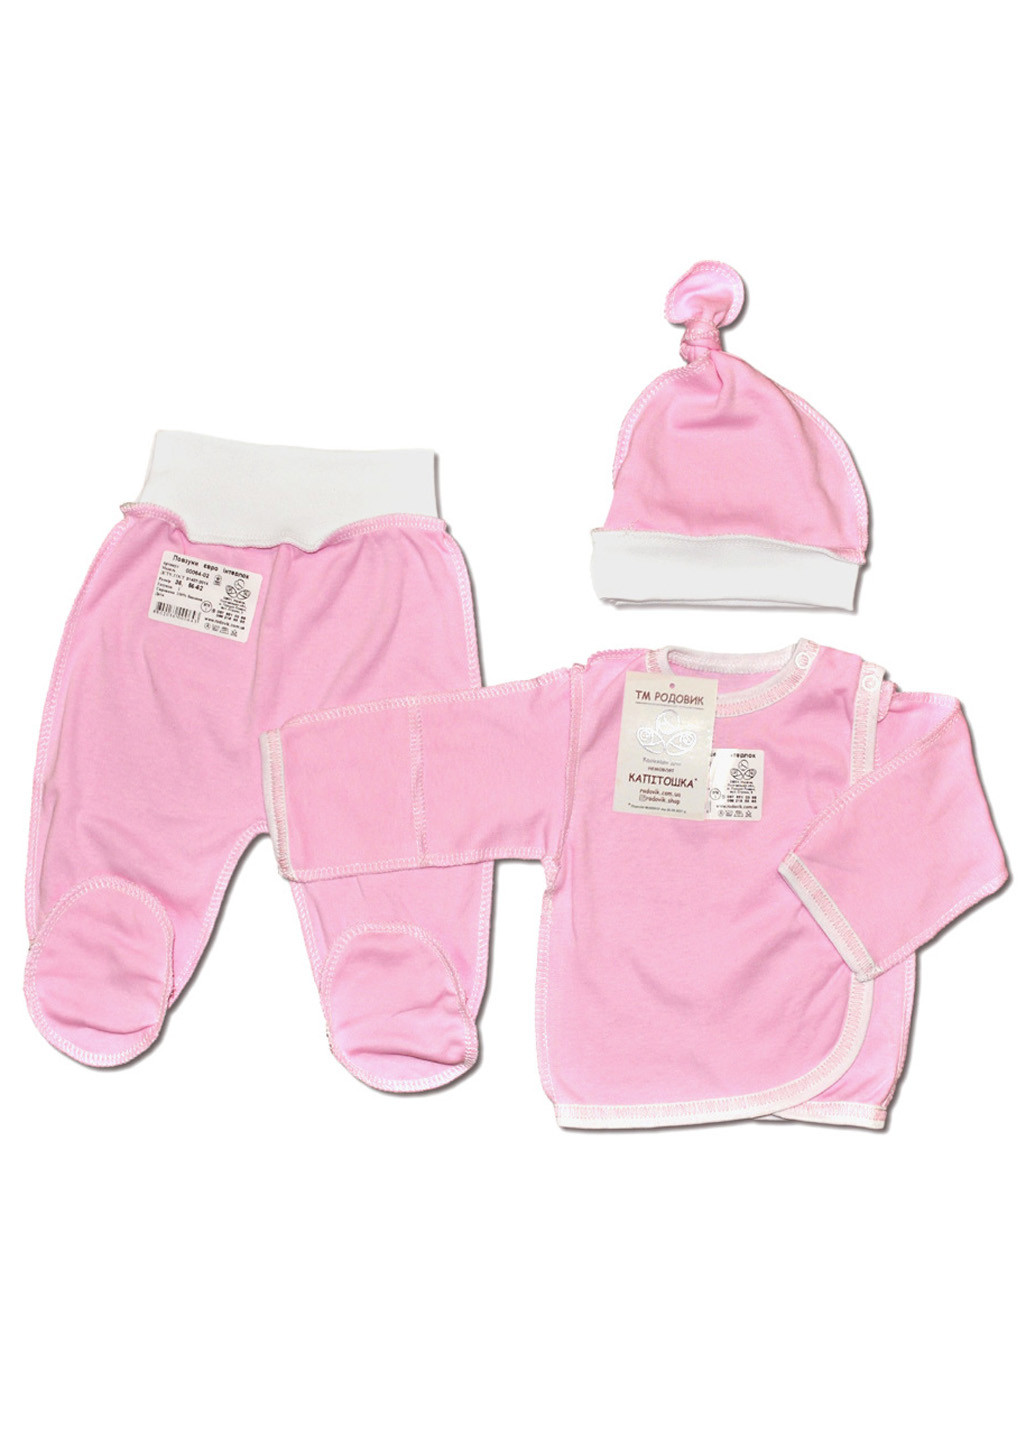 Розовый демисезонный костюм для новорожденных №1 (3 предмета) тм коллекция капитошка розовый Родовик костюм Р